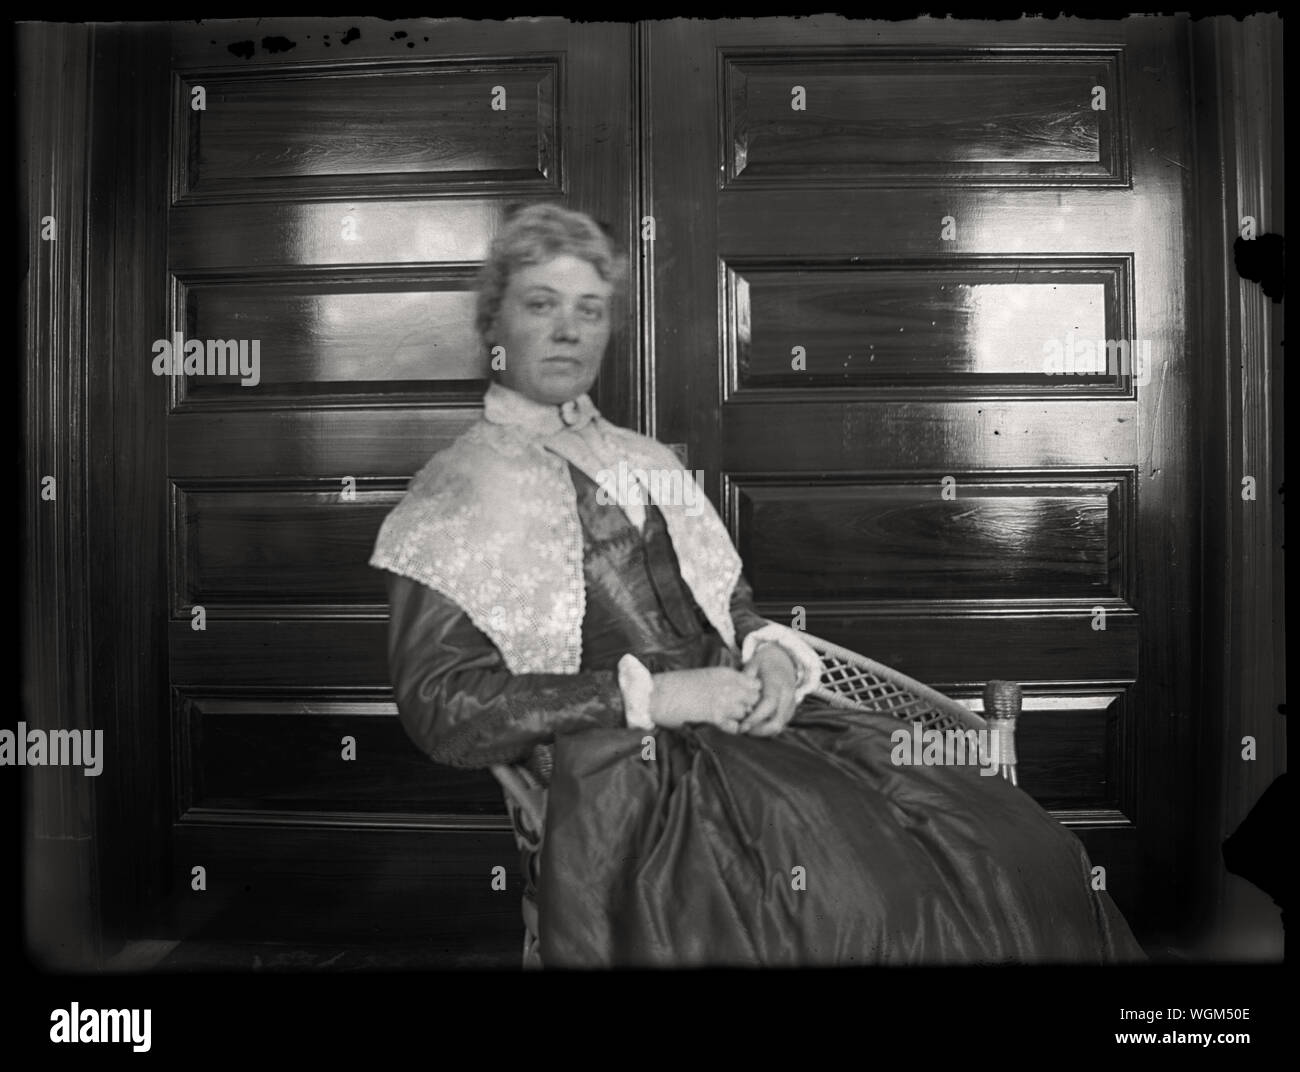 Ritratto di donna nella sedia di vimini indossando storico stile coloniale abito. Inizio periodo edoardiano fotografia amatoriale, scandita dall'originale 3x4 pollici lastra di vetro negativo circa primi 1900s. Foto Stock